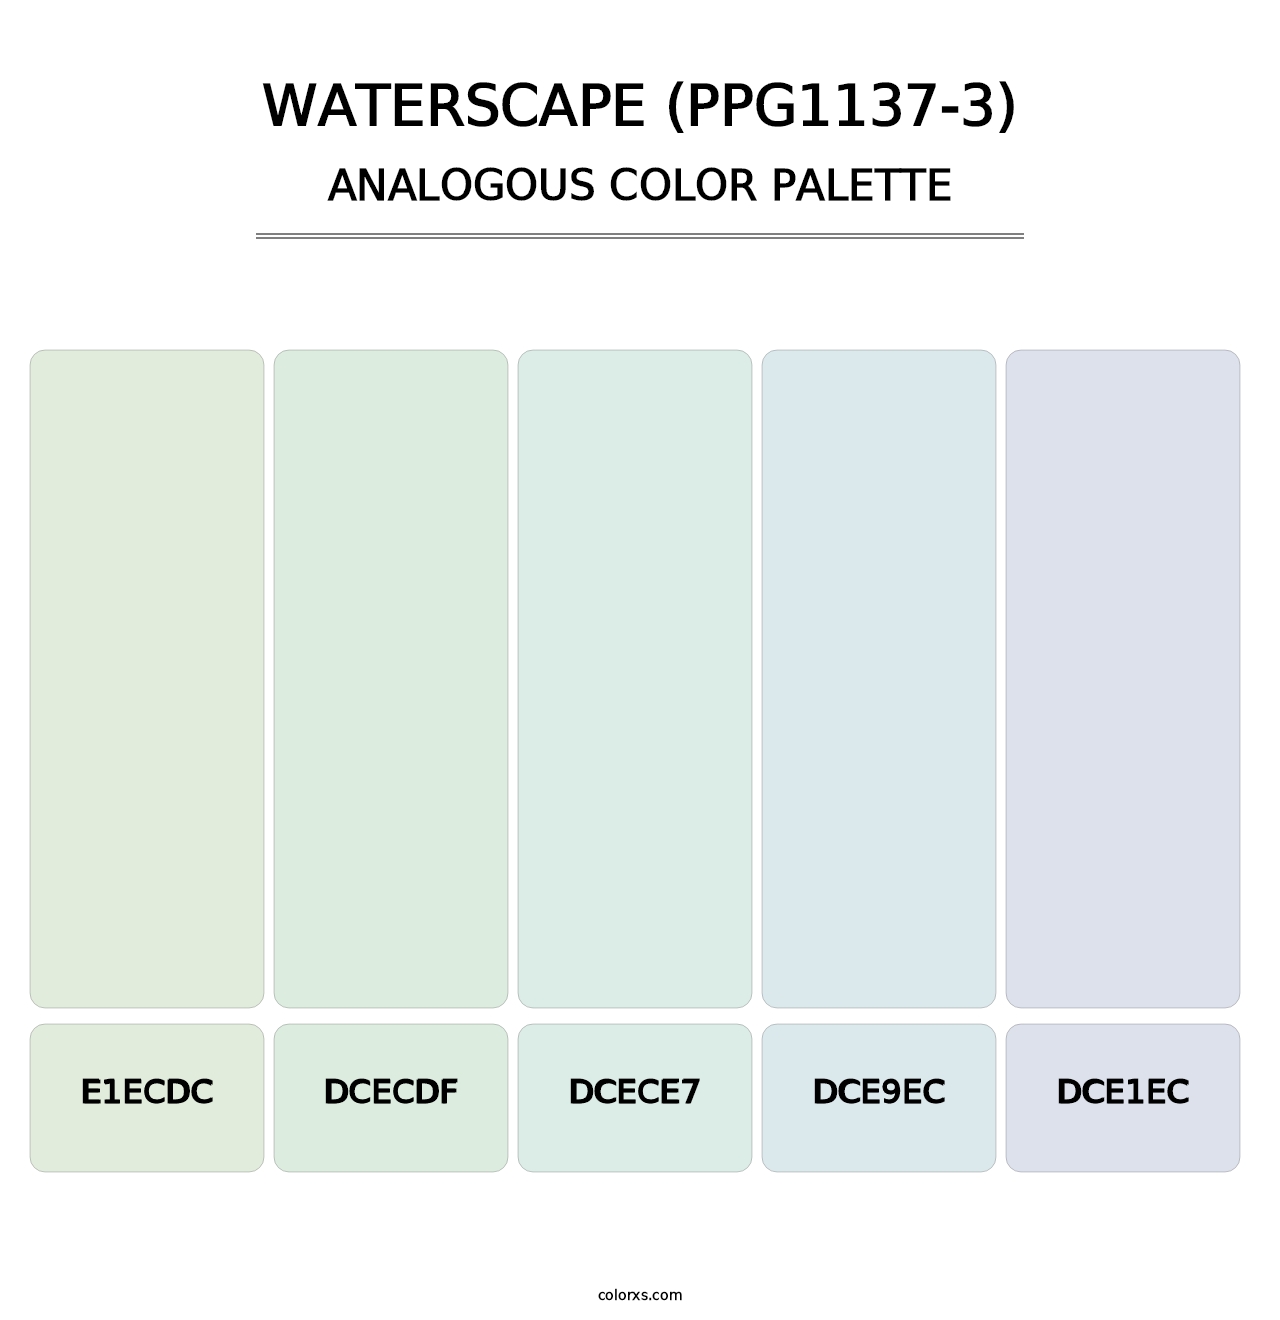 Waterscape (PPG1137-3) - Analogous Color Palette